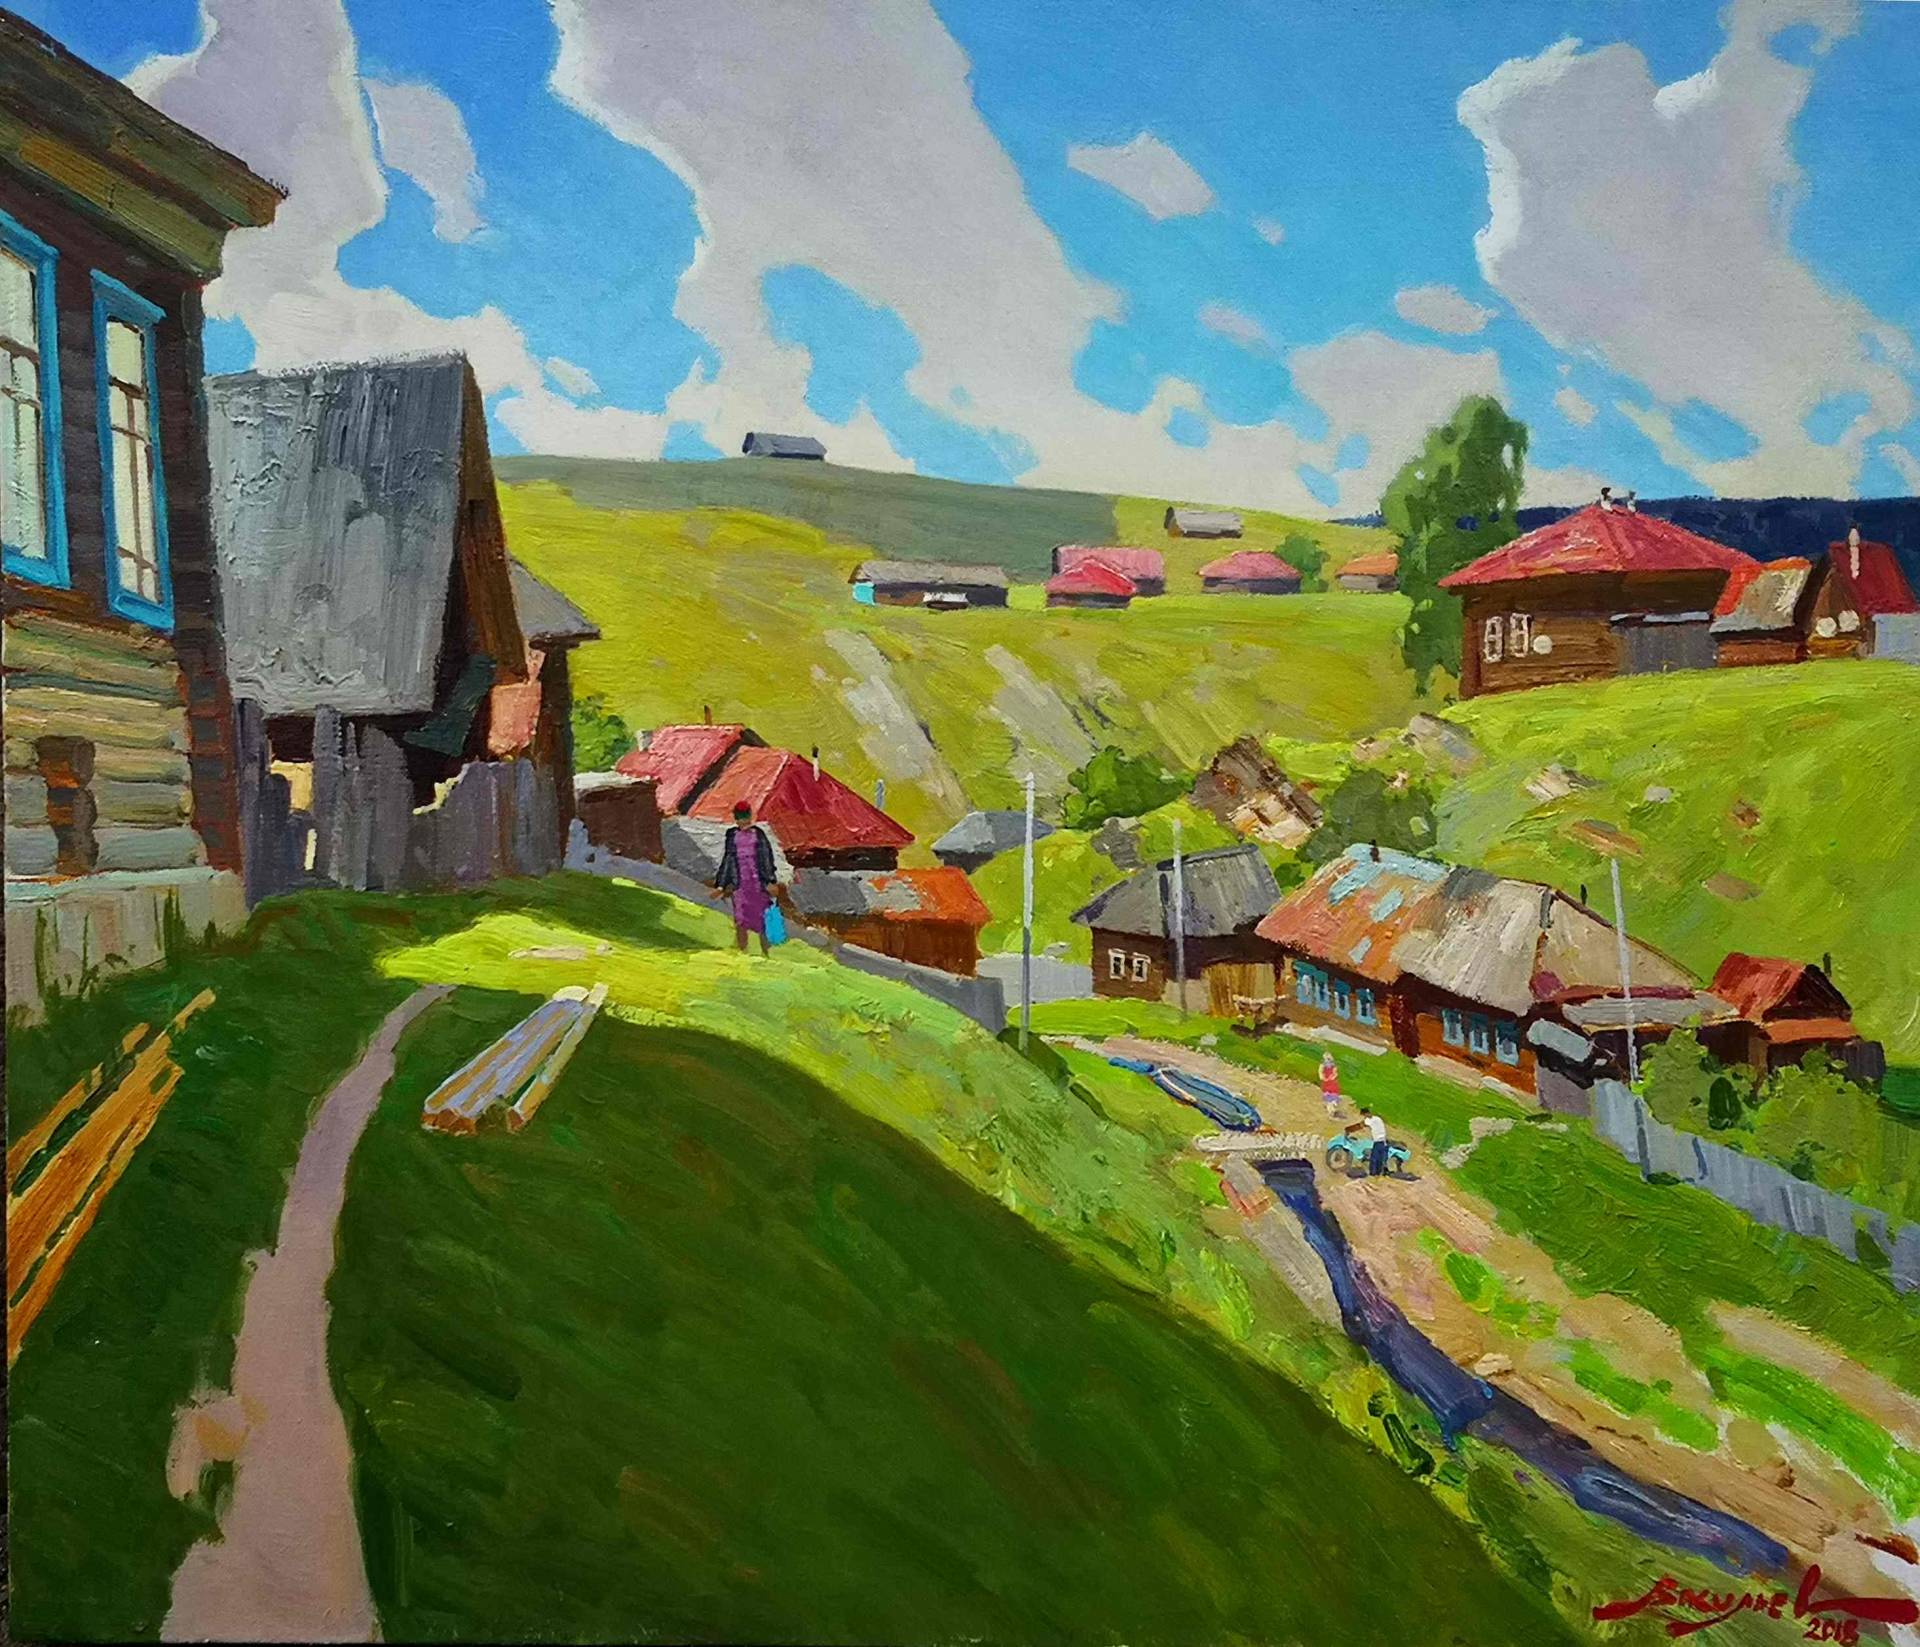 Hot summer - 1, Dmitry Vasiliev, Buy the painting Oil